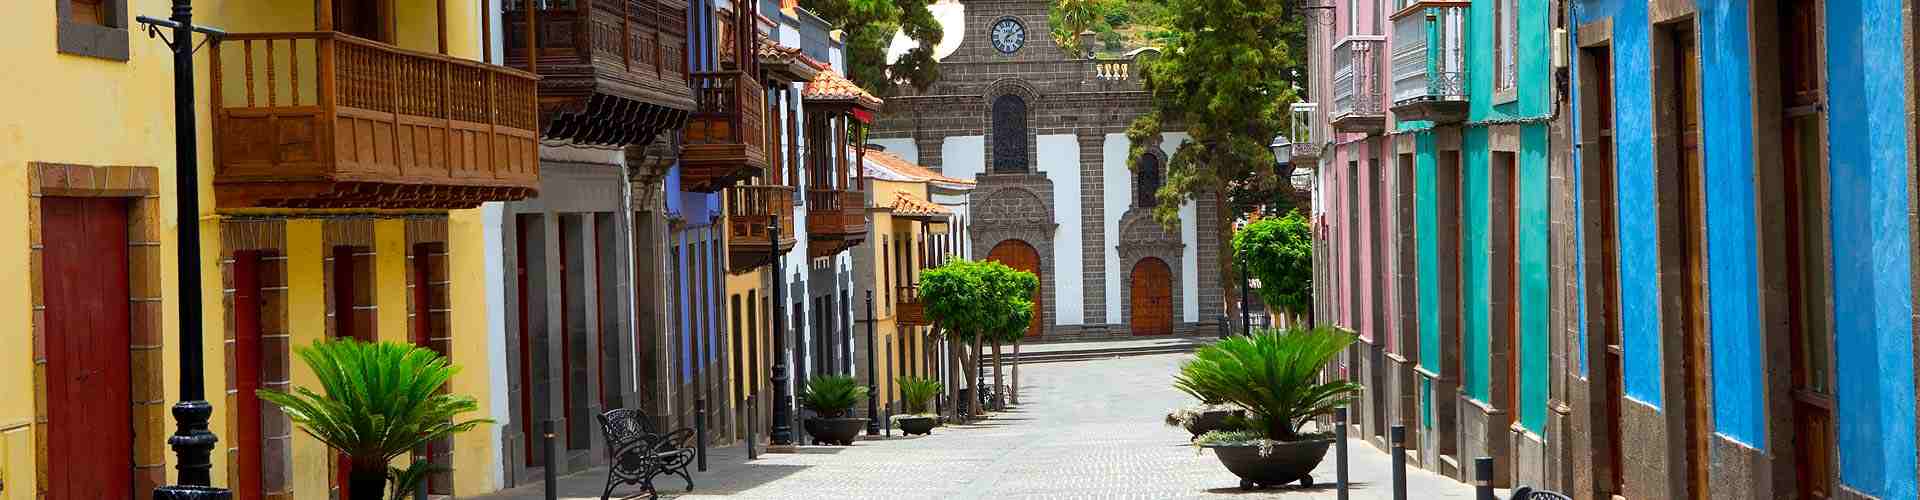 Restaurantes cerca del ayuntamiento en Quintana Urria